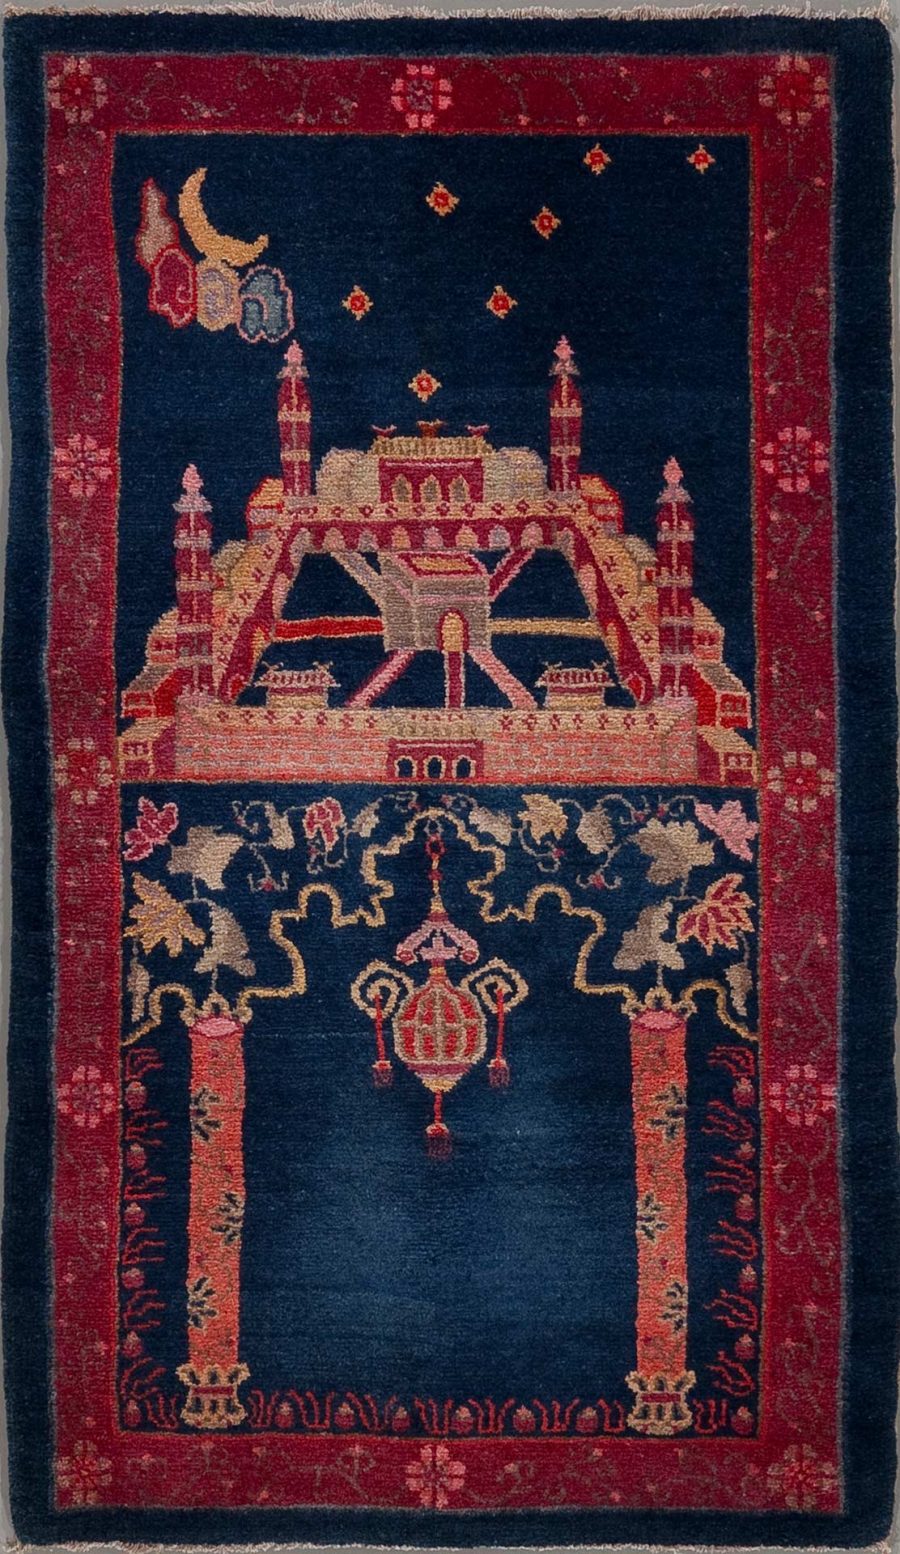 Traditioneller orientalischer Teppich mit detaillierter Darstellung einer Moschee oder eines Palastes in der Mitte, flankiert von Minaretten, umgeben von floralen Mustern und Bordüren; im oberen linken Bereich abgebildete Mondsichel und Sterne auf dunkelblauem Hintergrund.